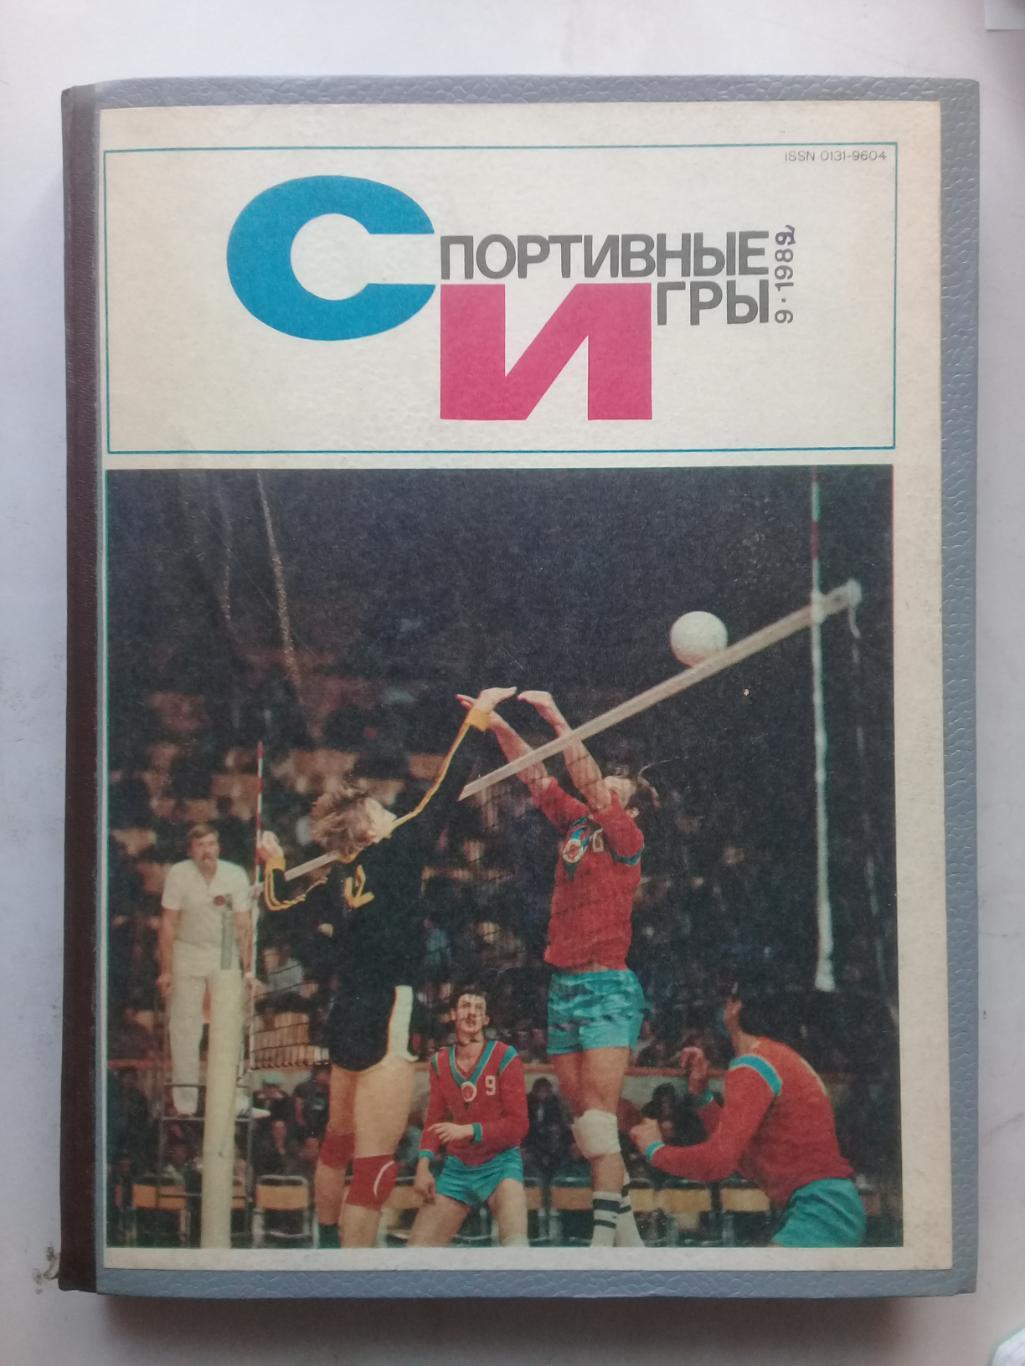 (Только для dk7586) Журнал Спортивные игры 1982 год. Годовой комплект.